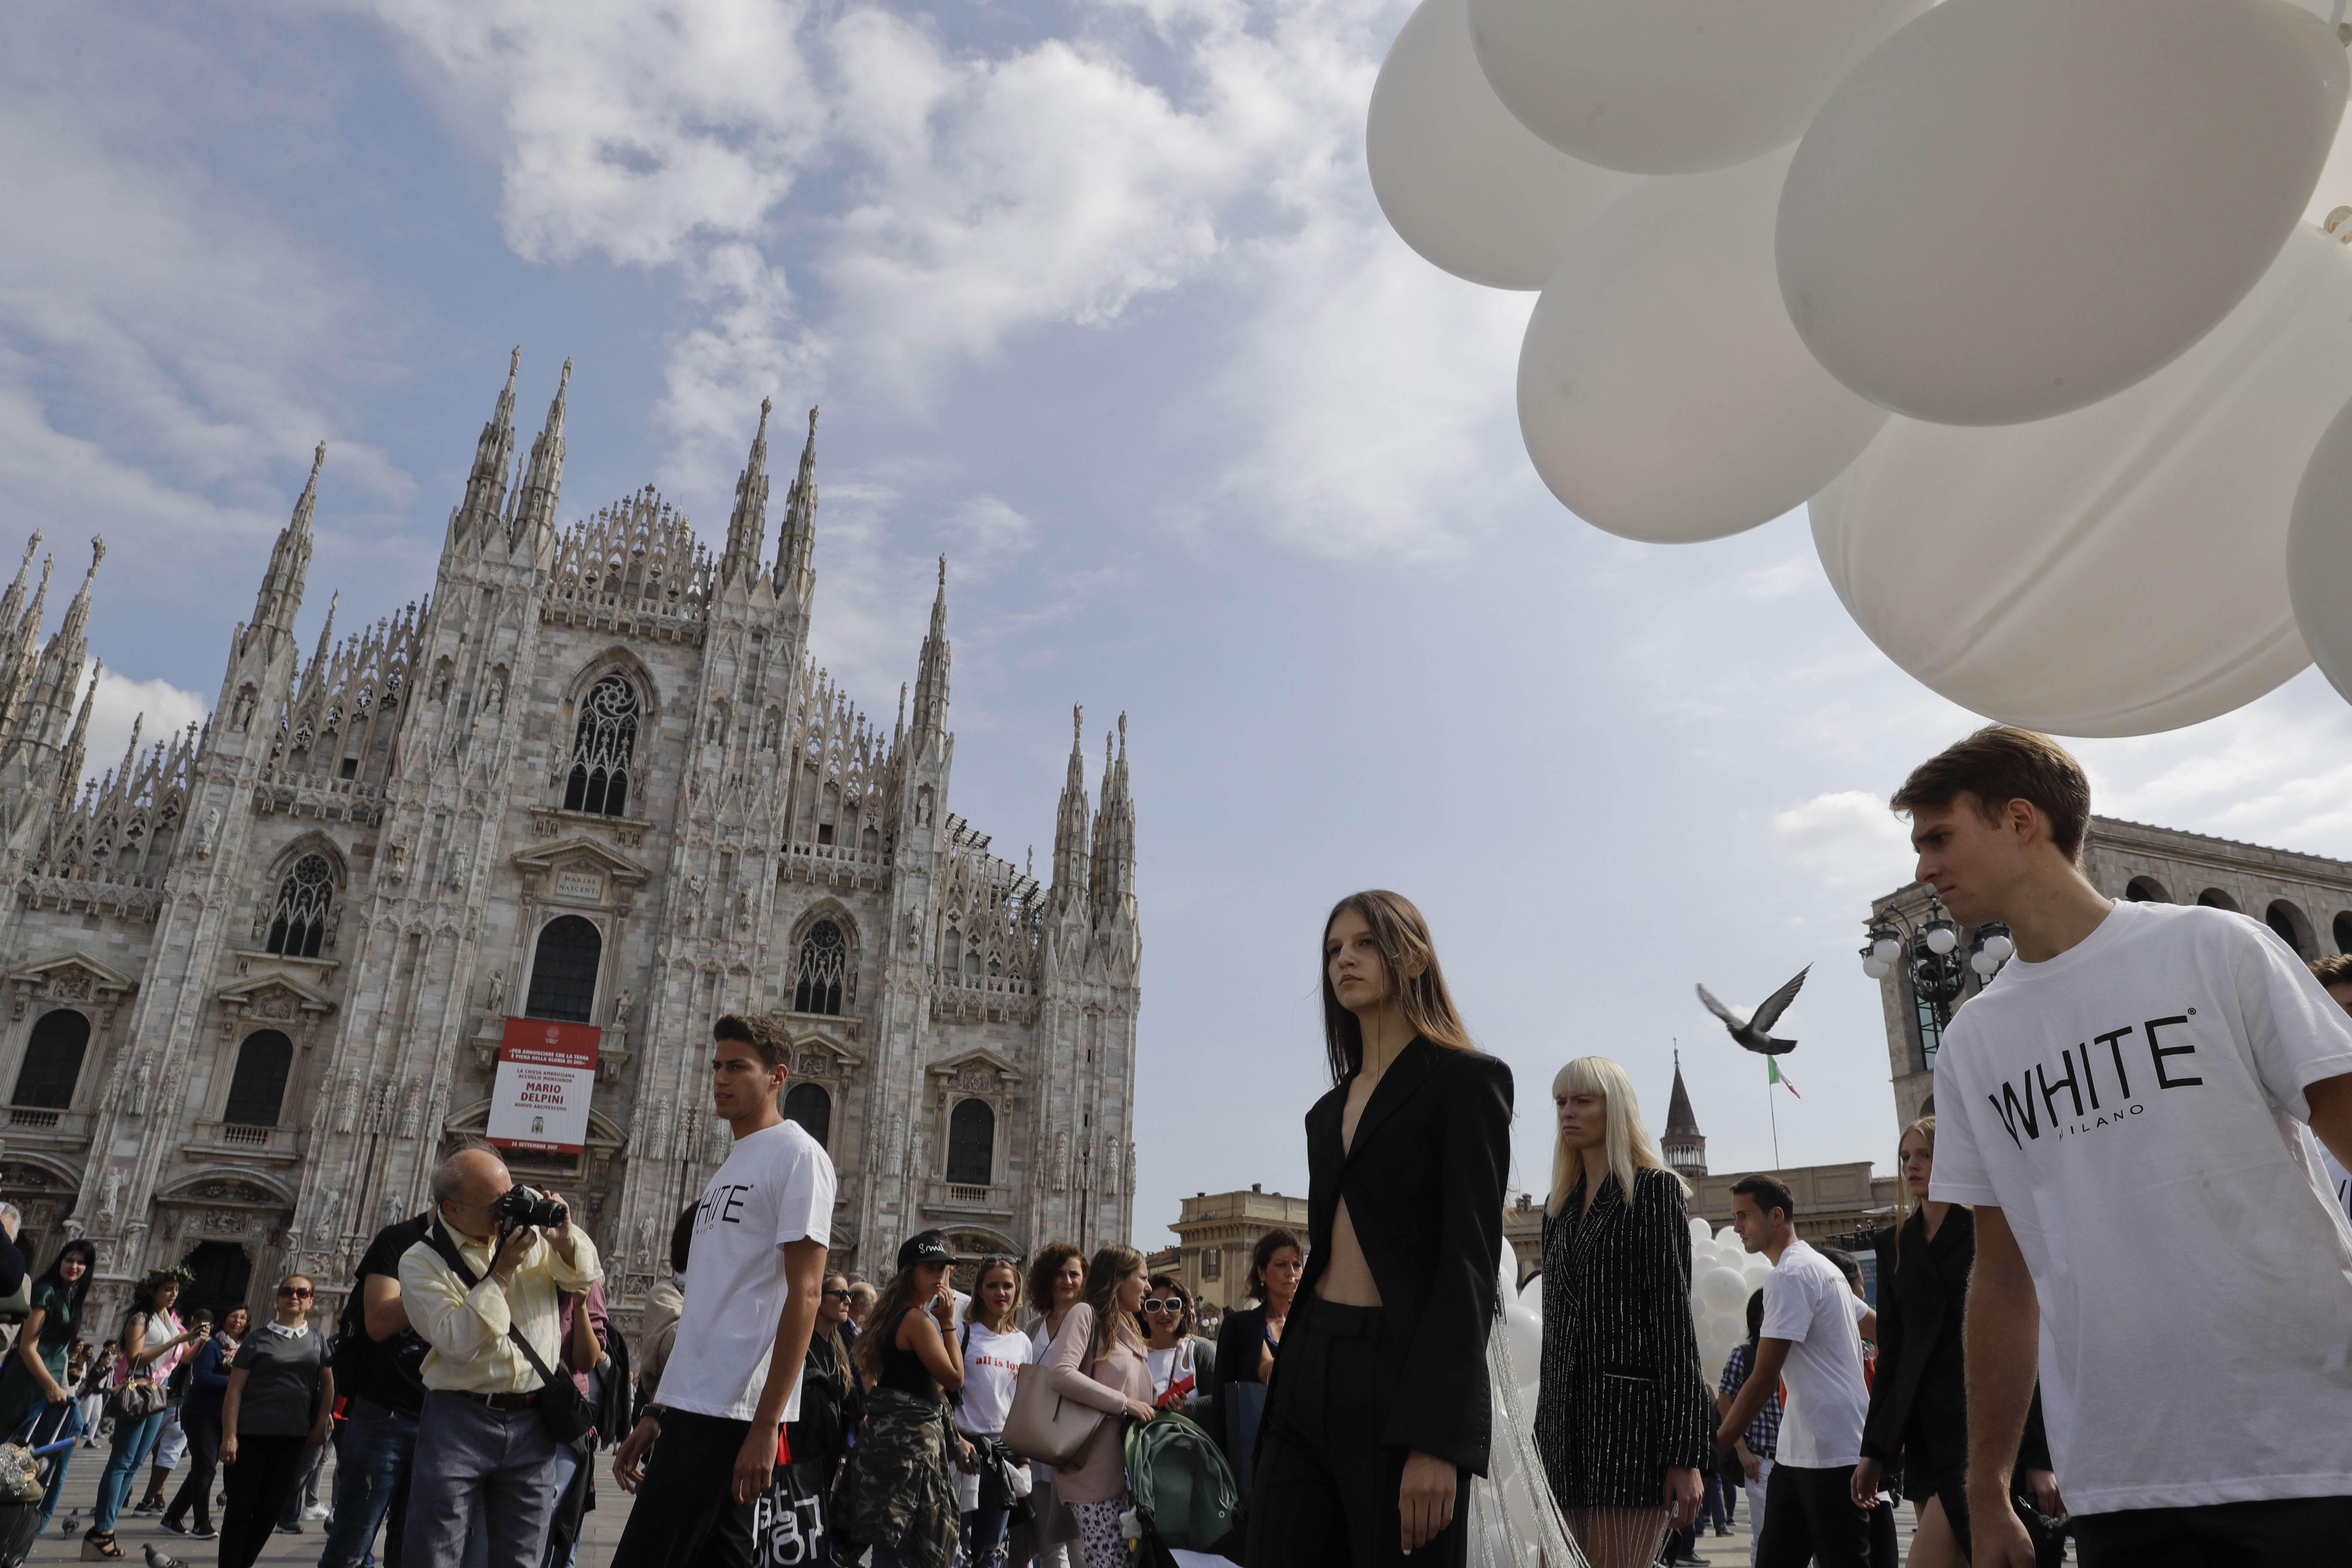 Закриха Седмицата на модата в Милано пред катедралата